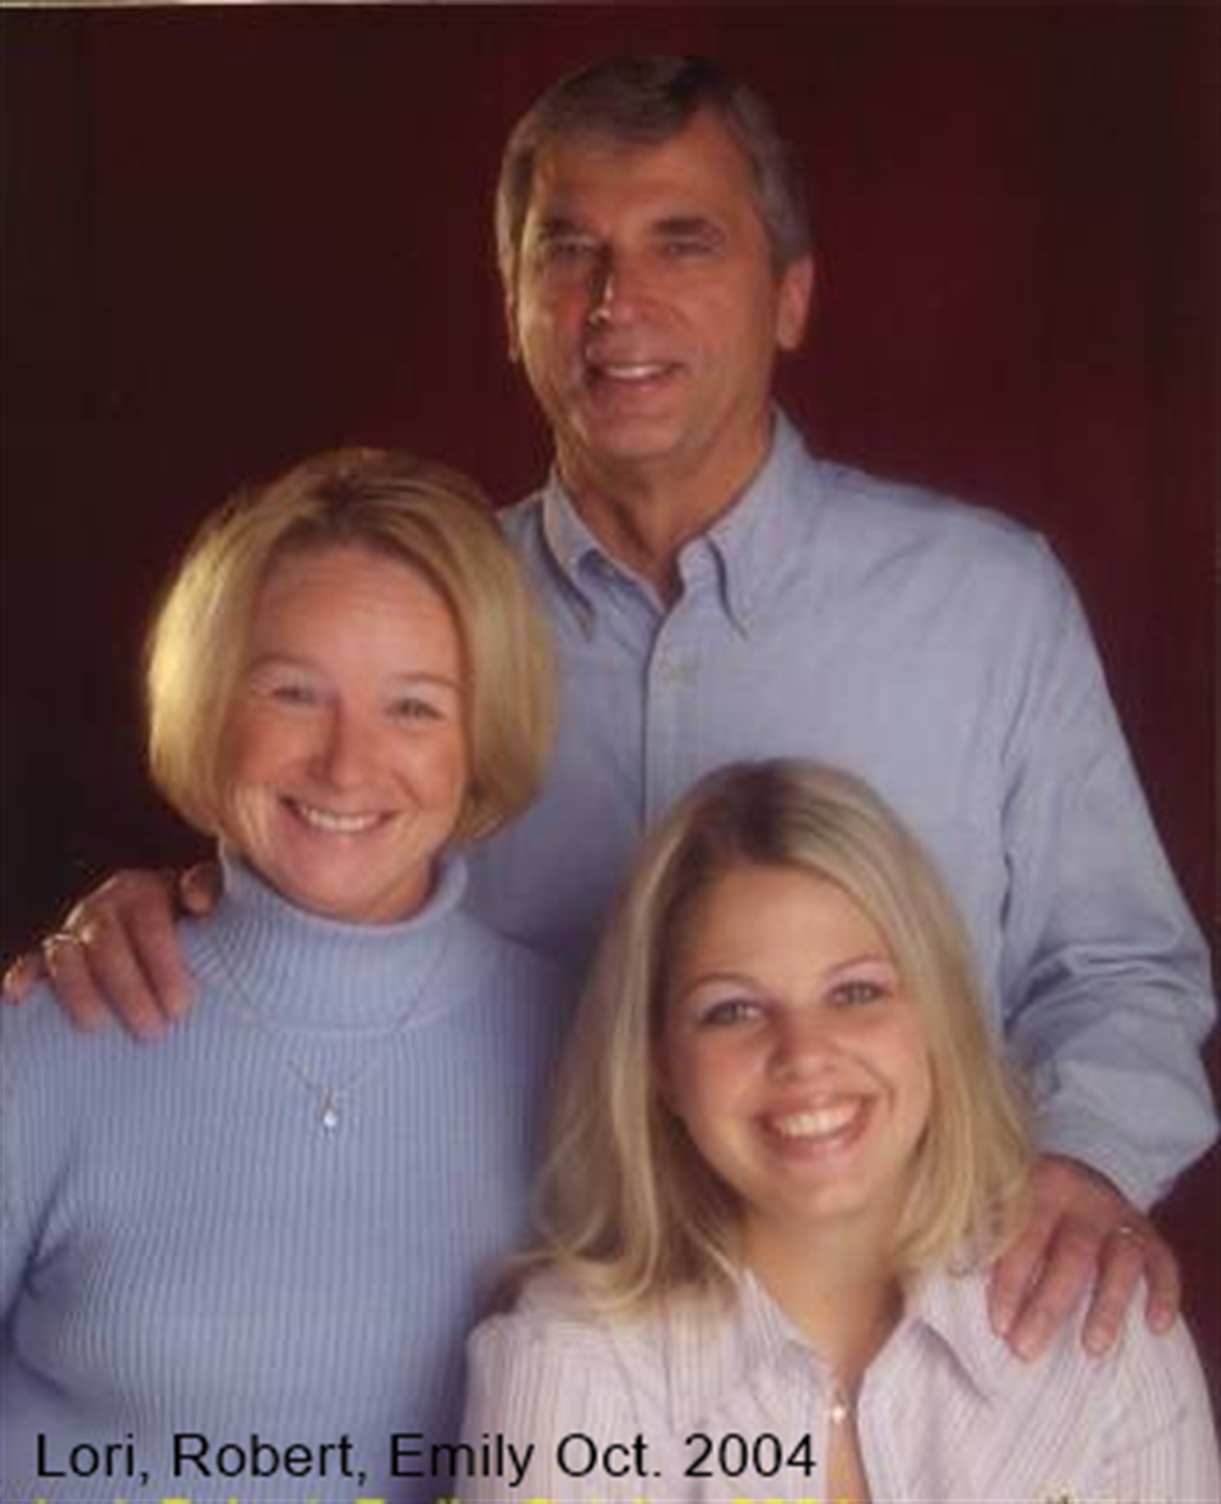 October 2004, Robert, Emily, and Lori